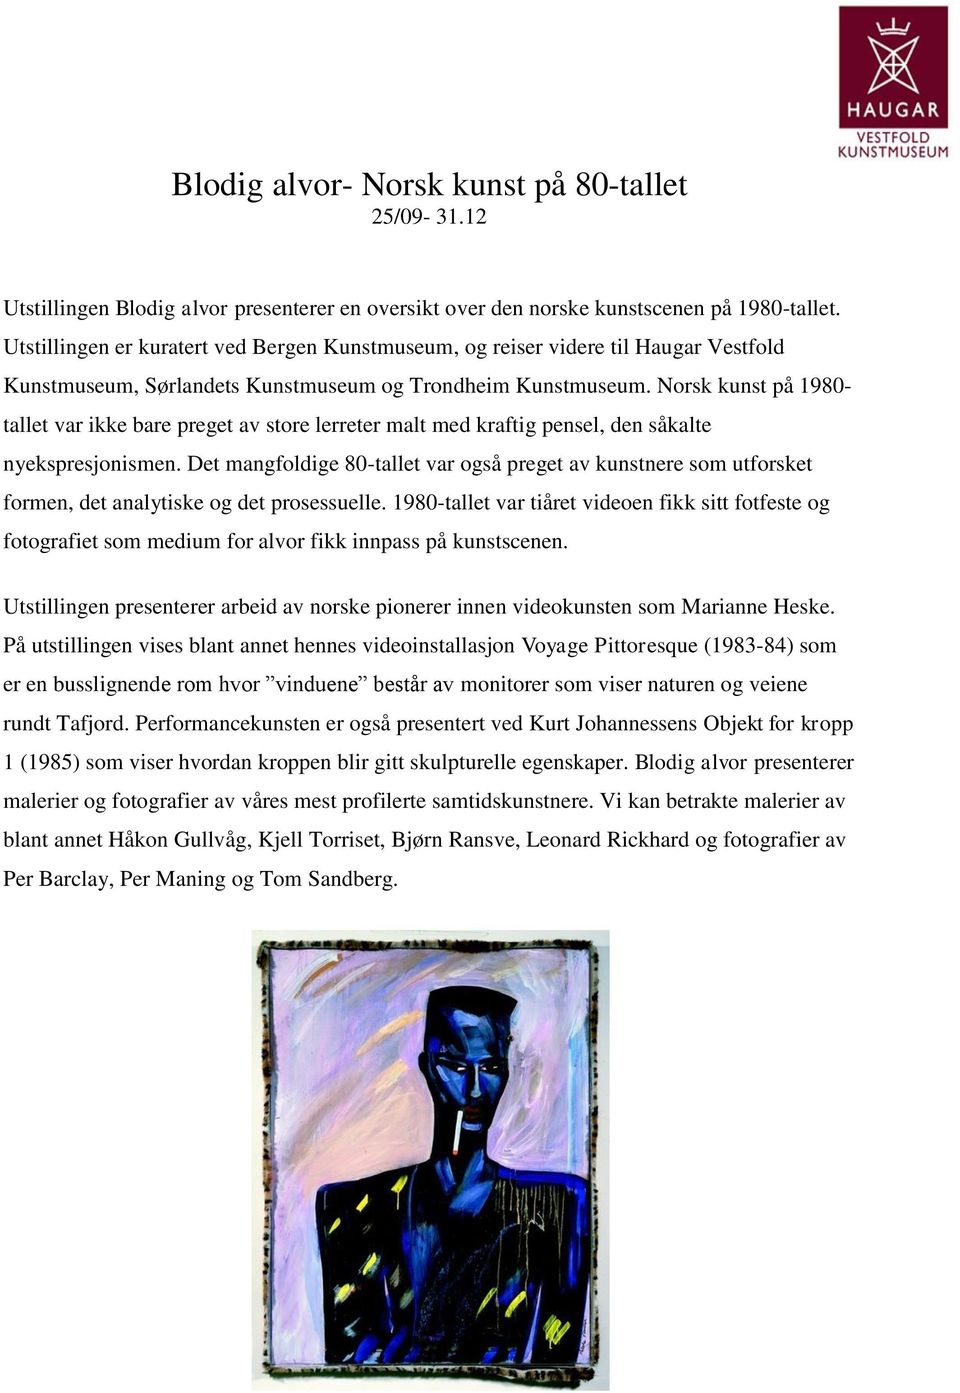 Norsk kunst på 1980- tallet var ikke bare preget av store lerreter malt med kraftig pensel, den såkalte nyekspresjonismen.